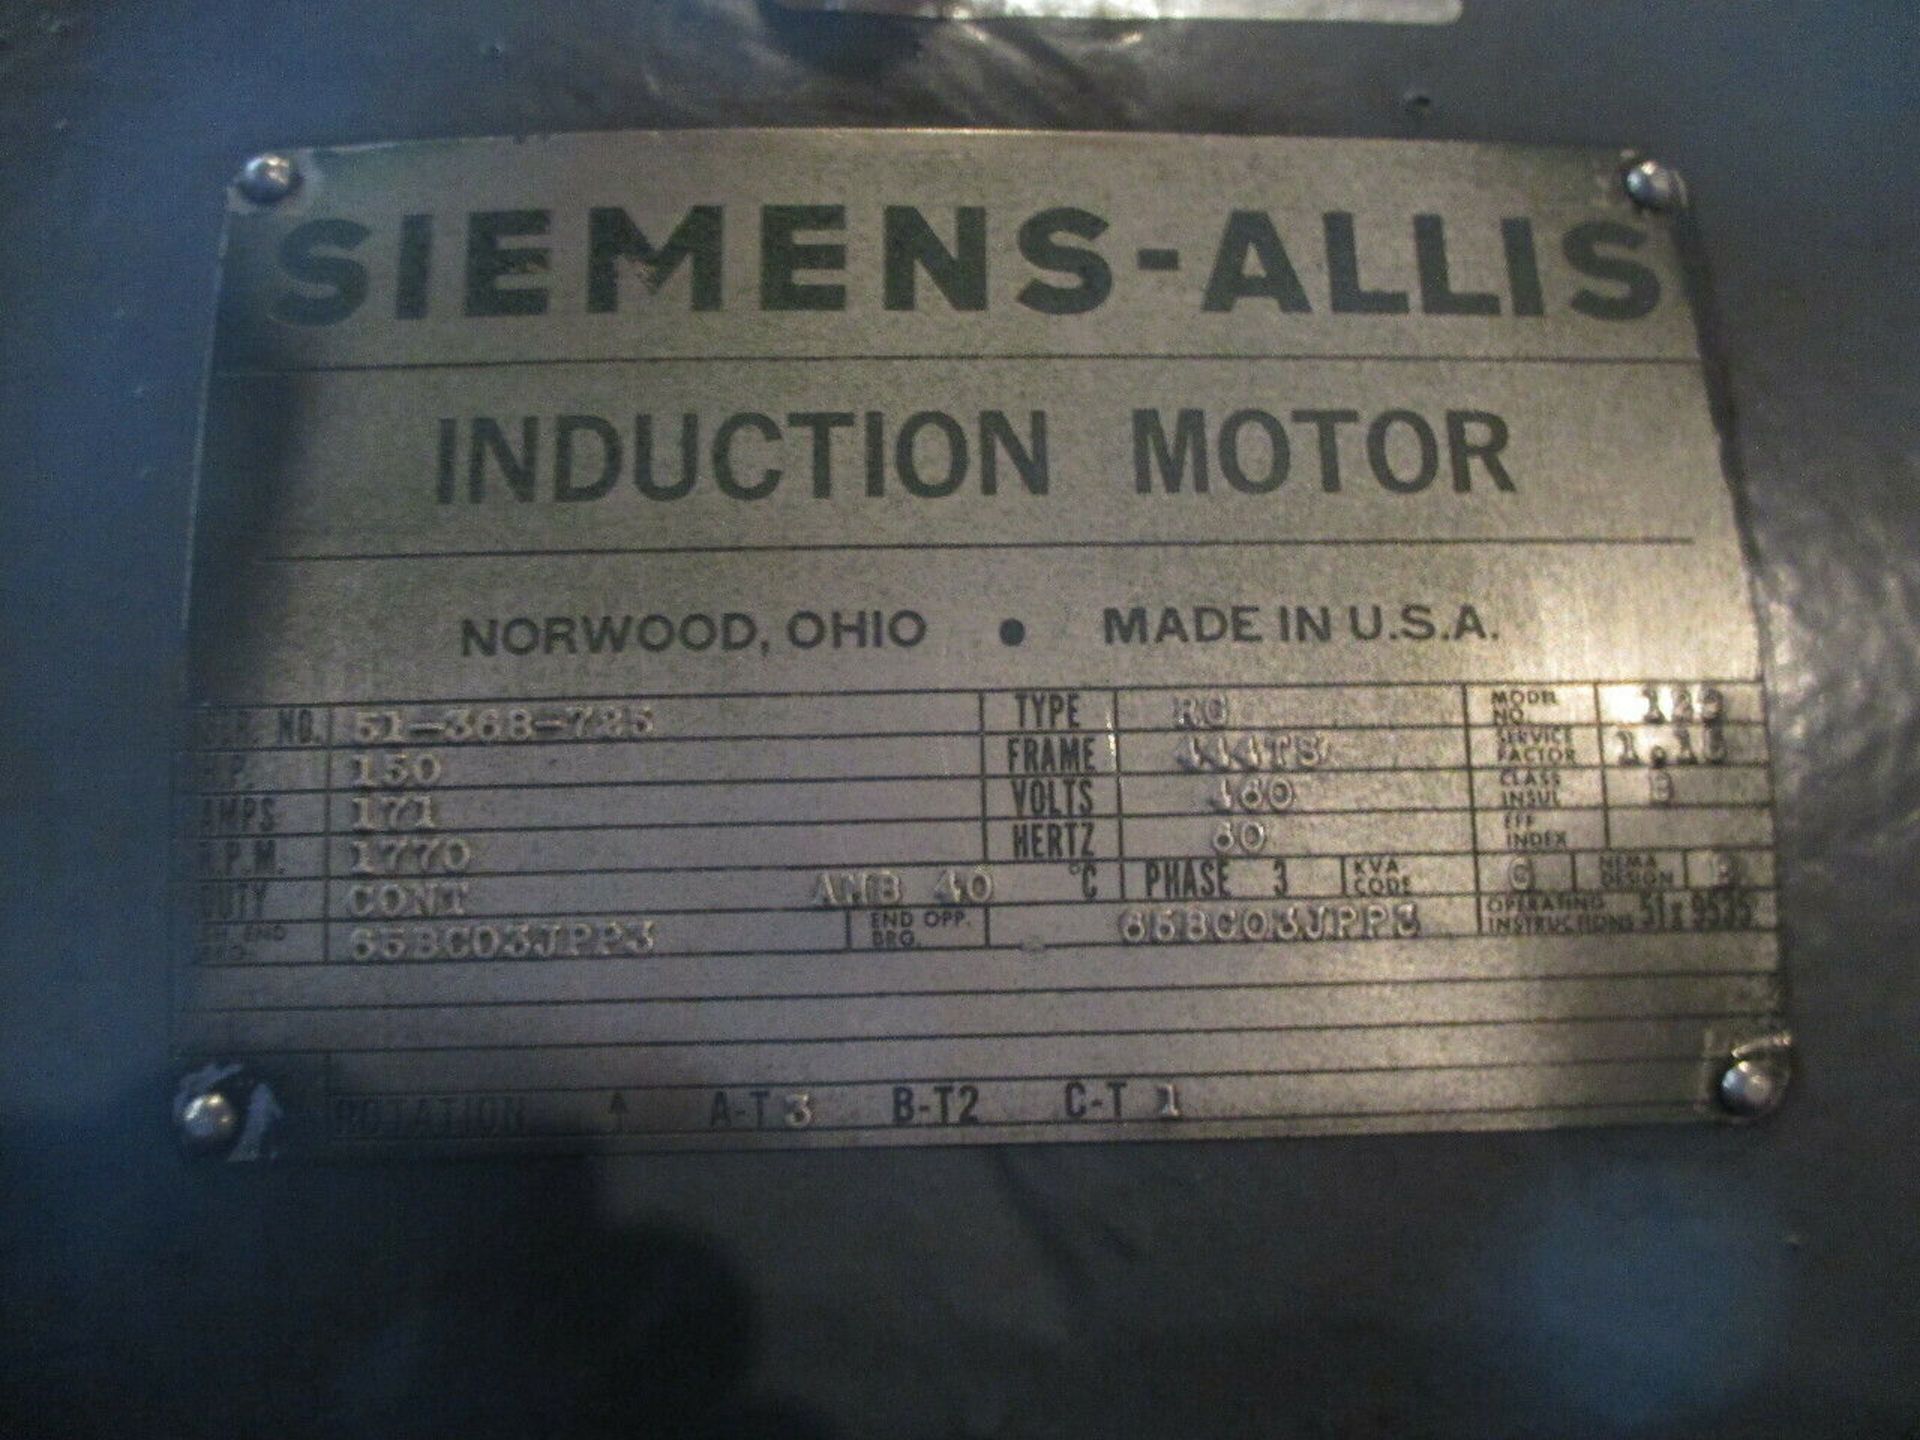 Siemens-Allis 150HP Induction Motor - Image 5 of 5